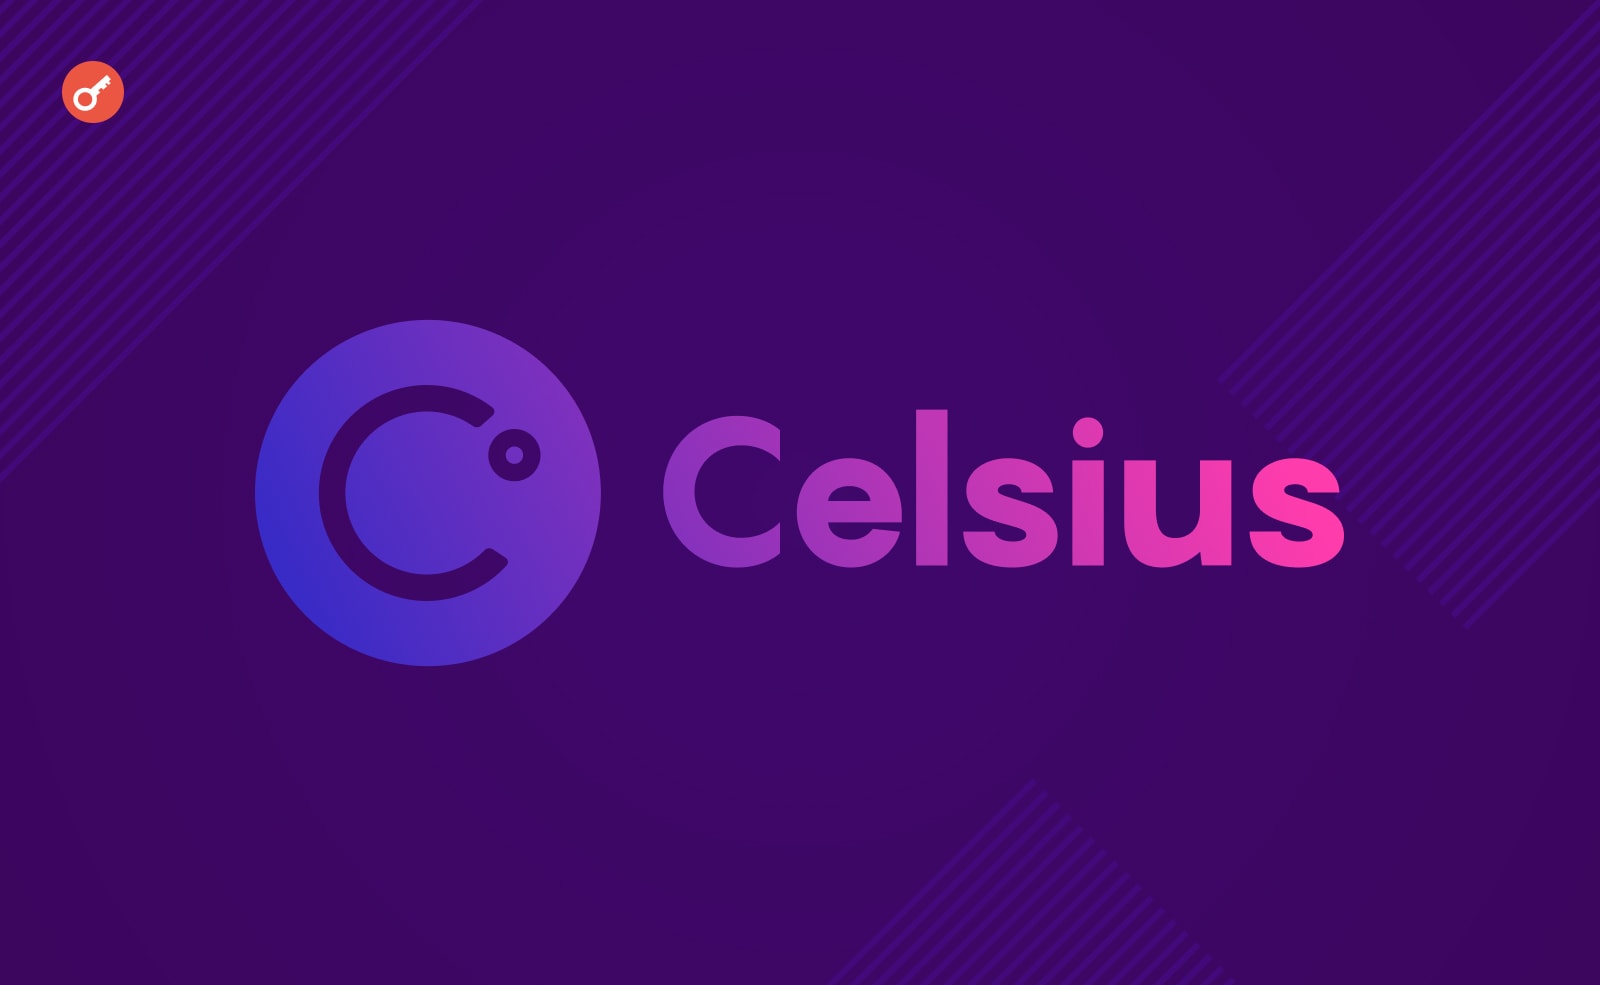 Celsius продает ваучеры Bitmain на $14 млн. Заглавный коллаж новости.